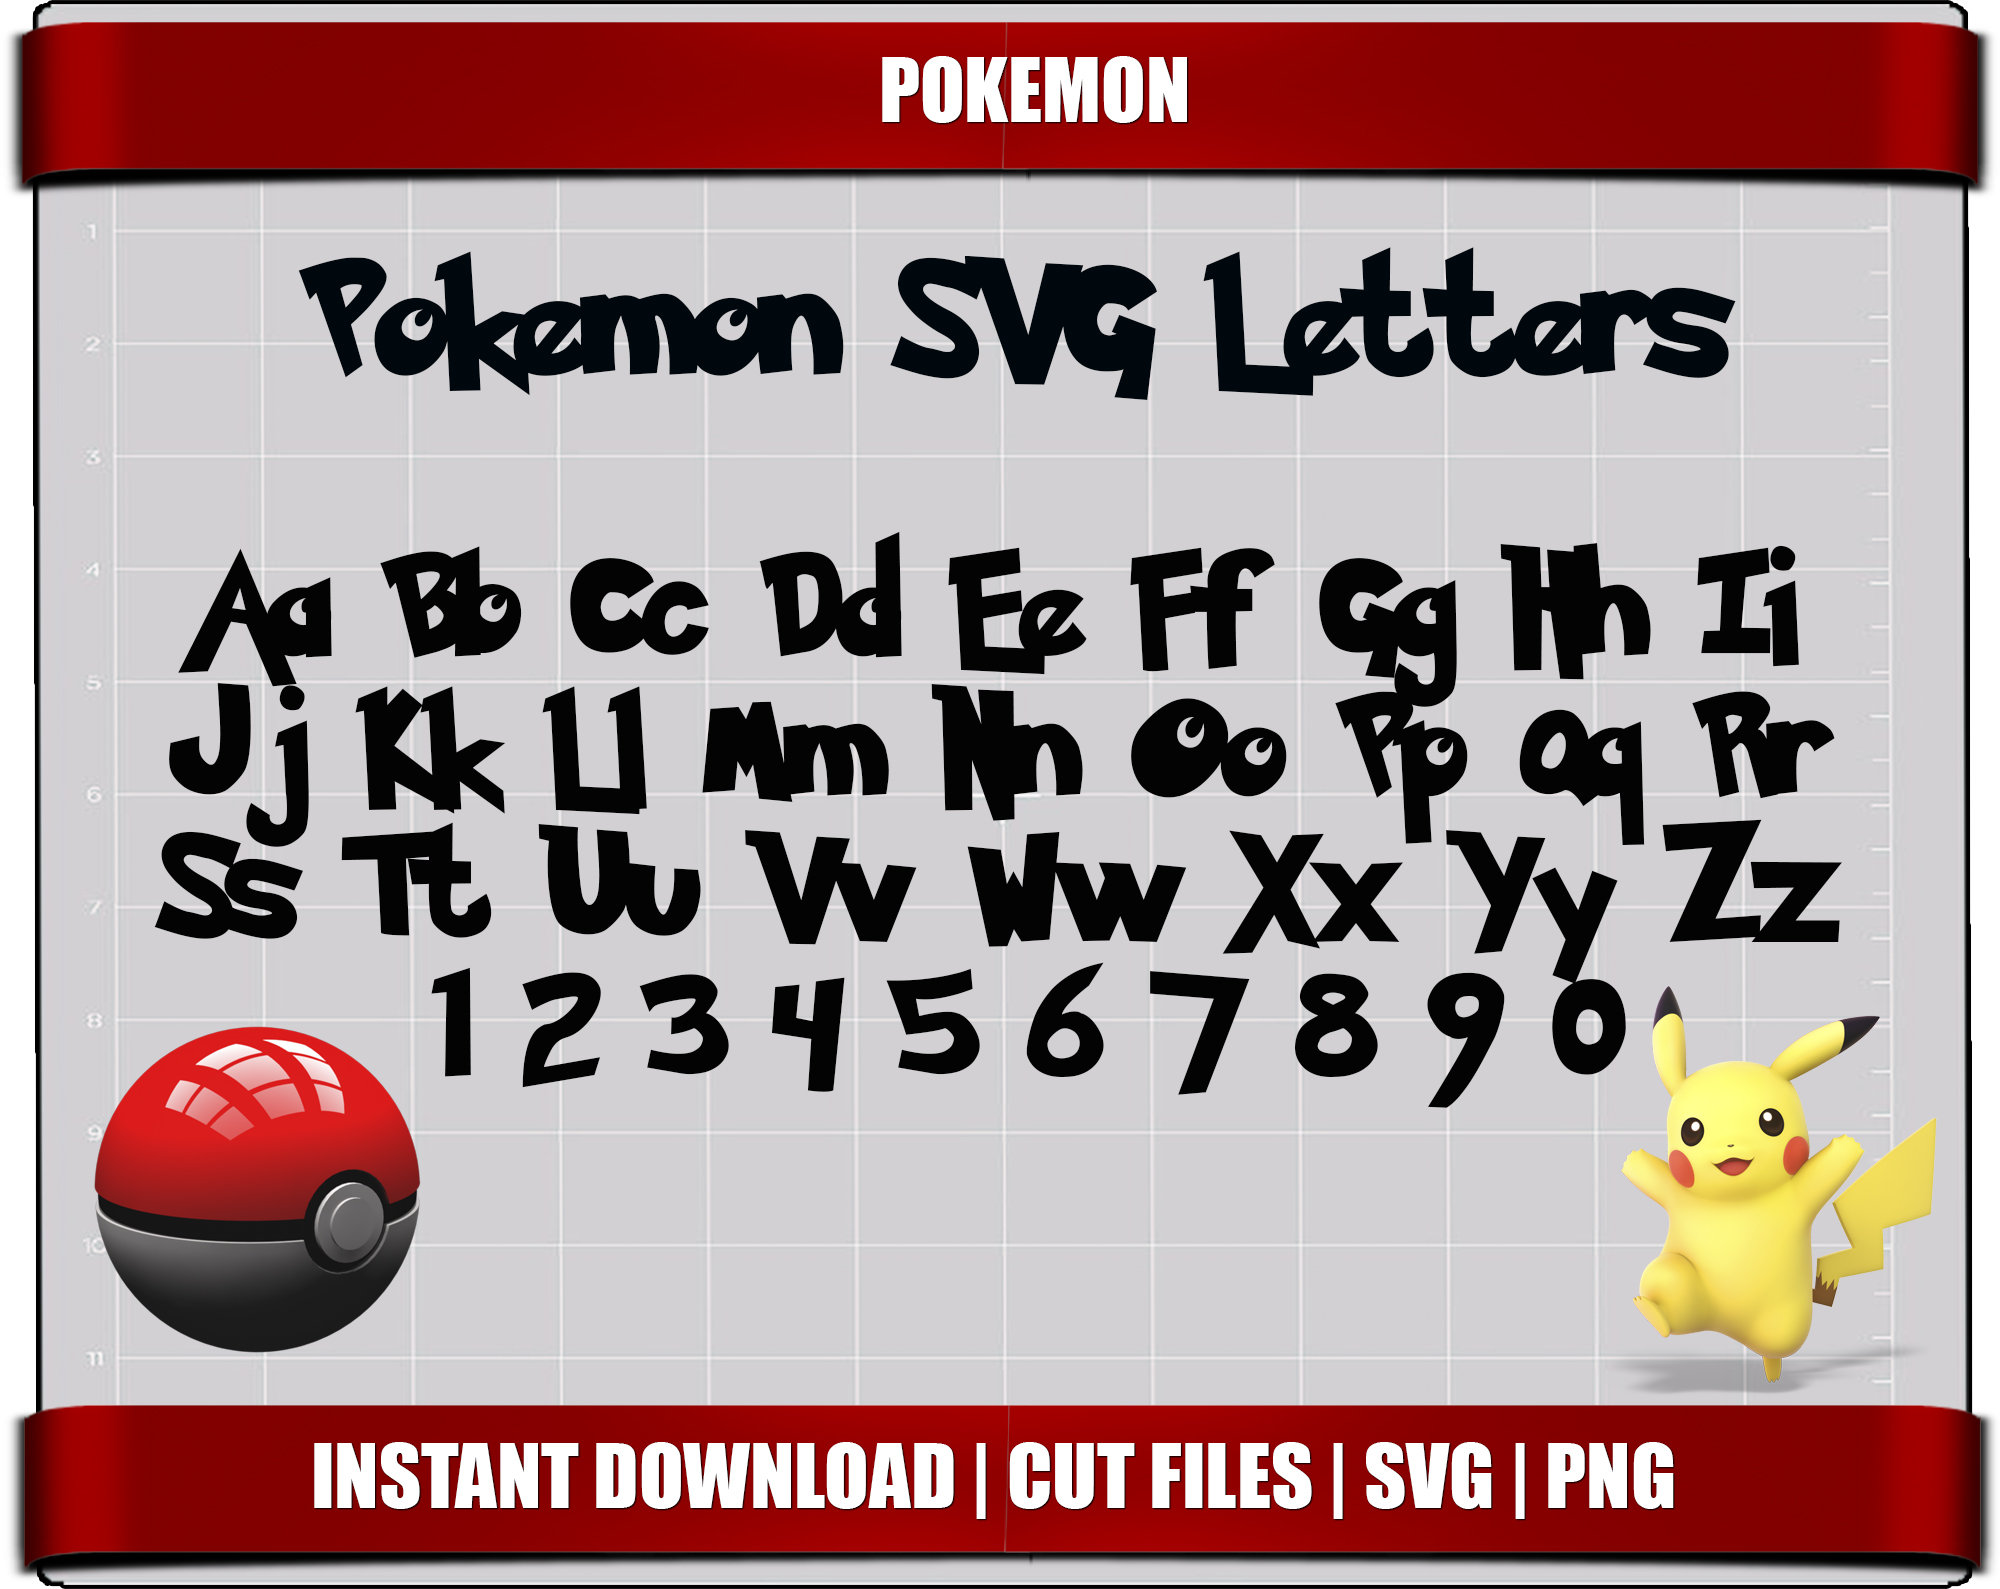 Pokemon Name 1234567890